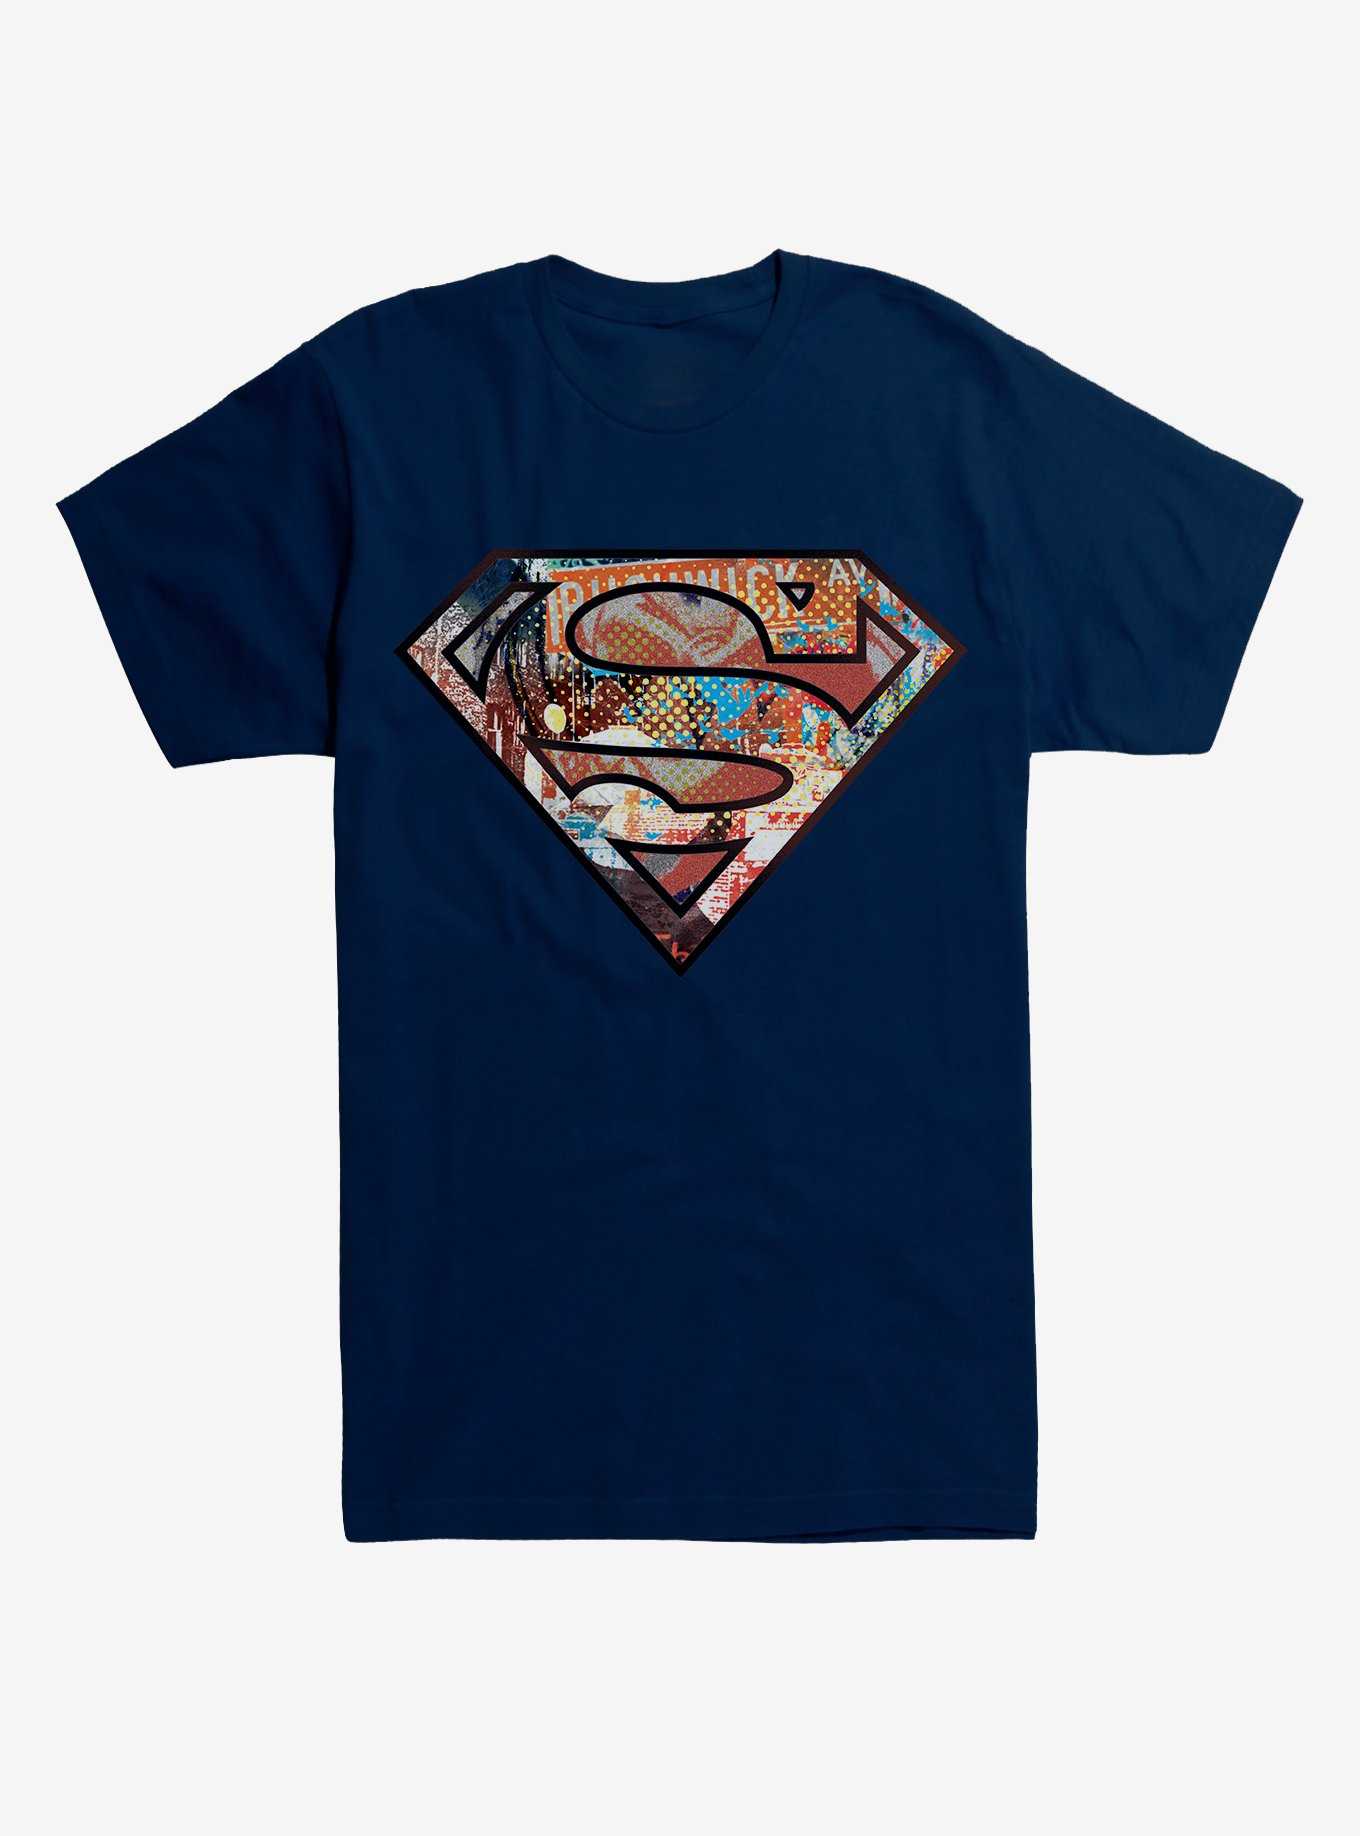 DC Comics Superman Pop Art Logo T-Shirt, , hi-res